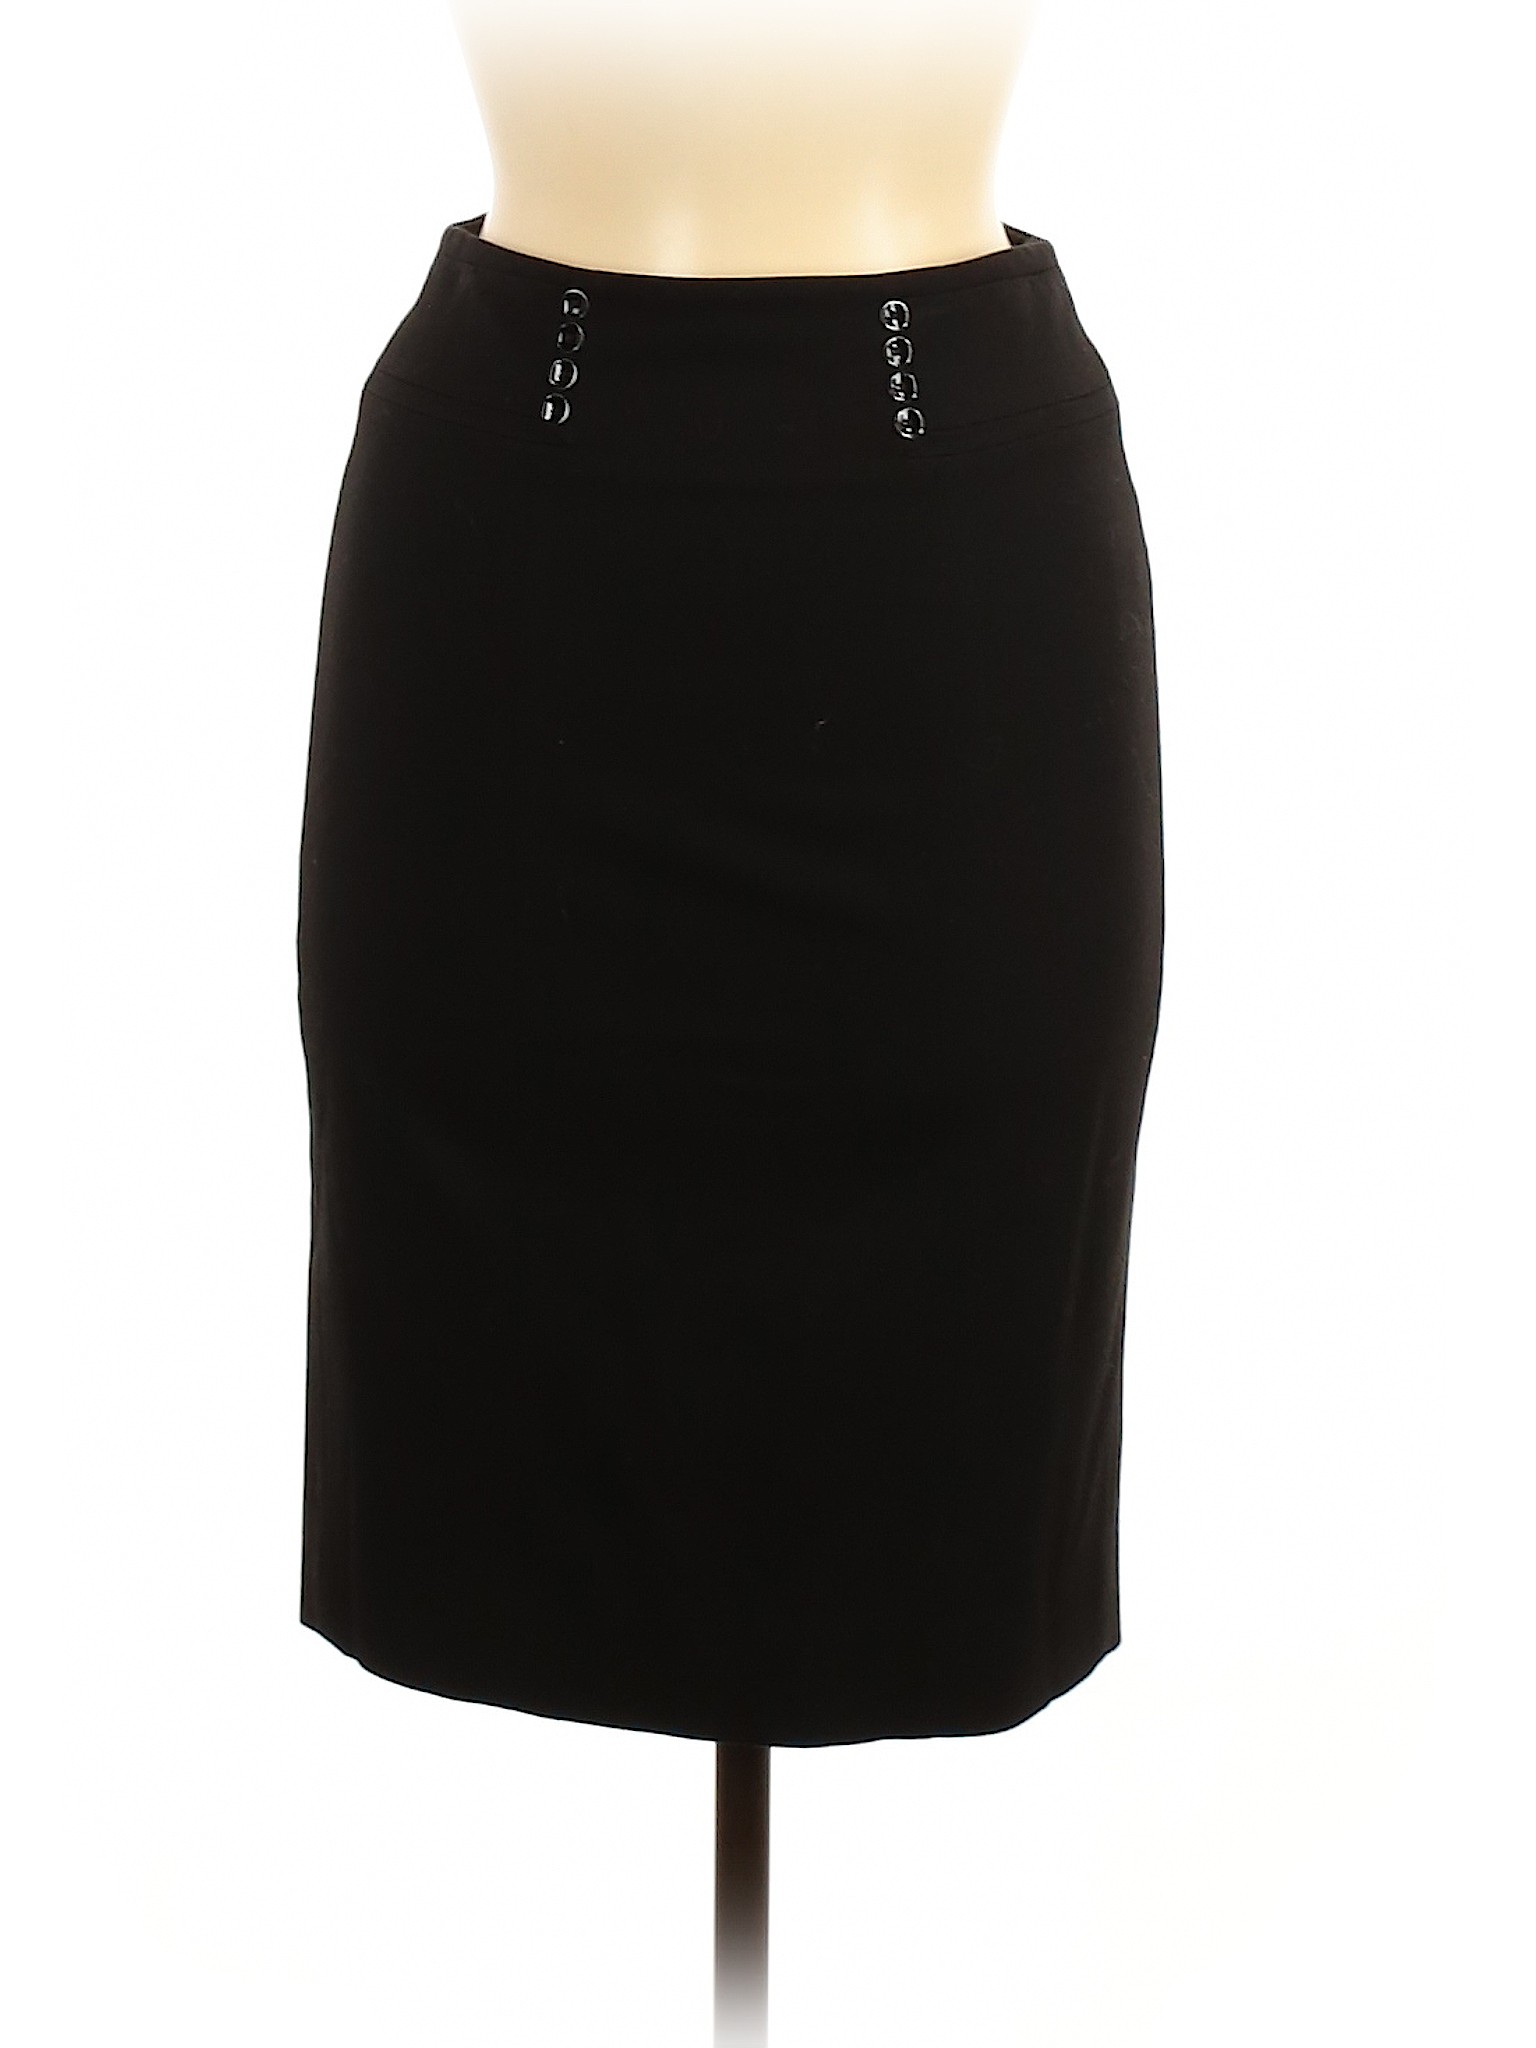 White House Black Market Women Black Casual Skirt 00 | eBay